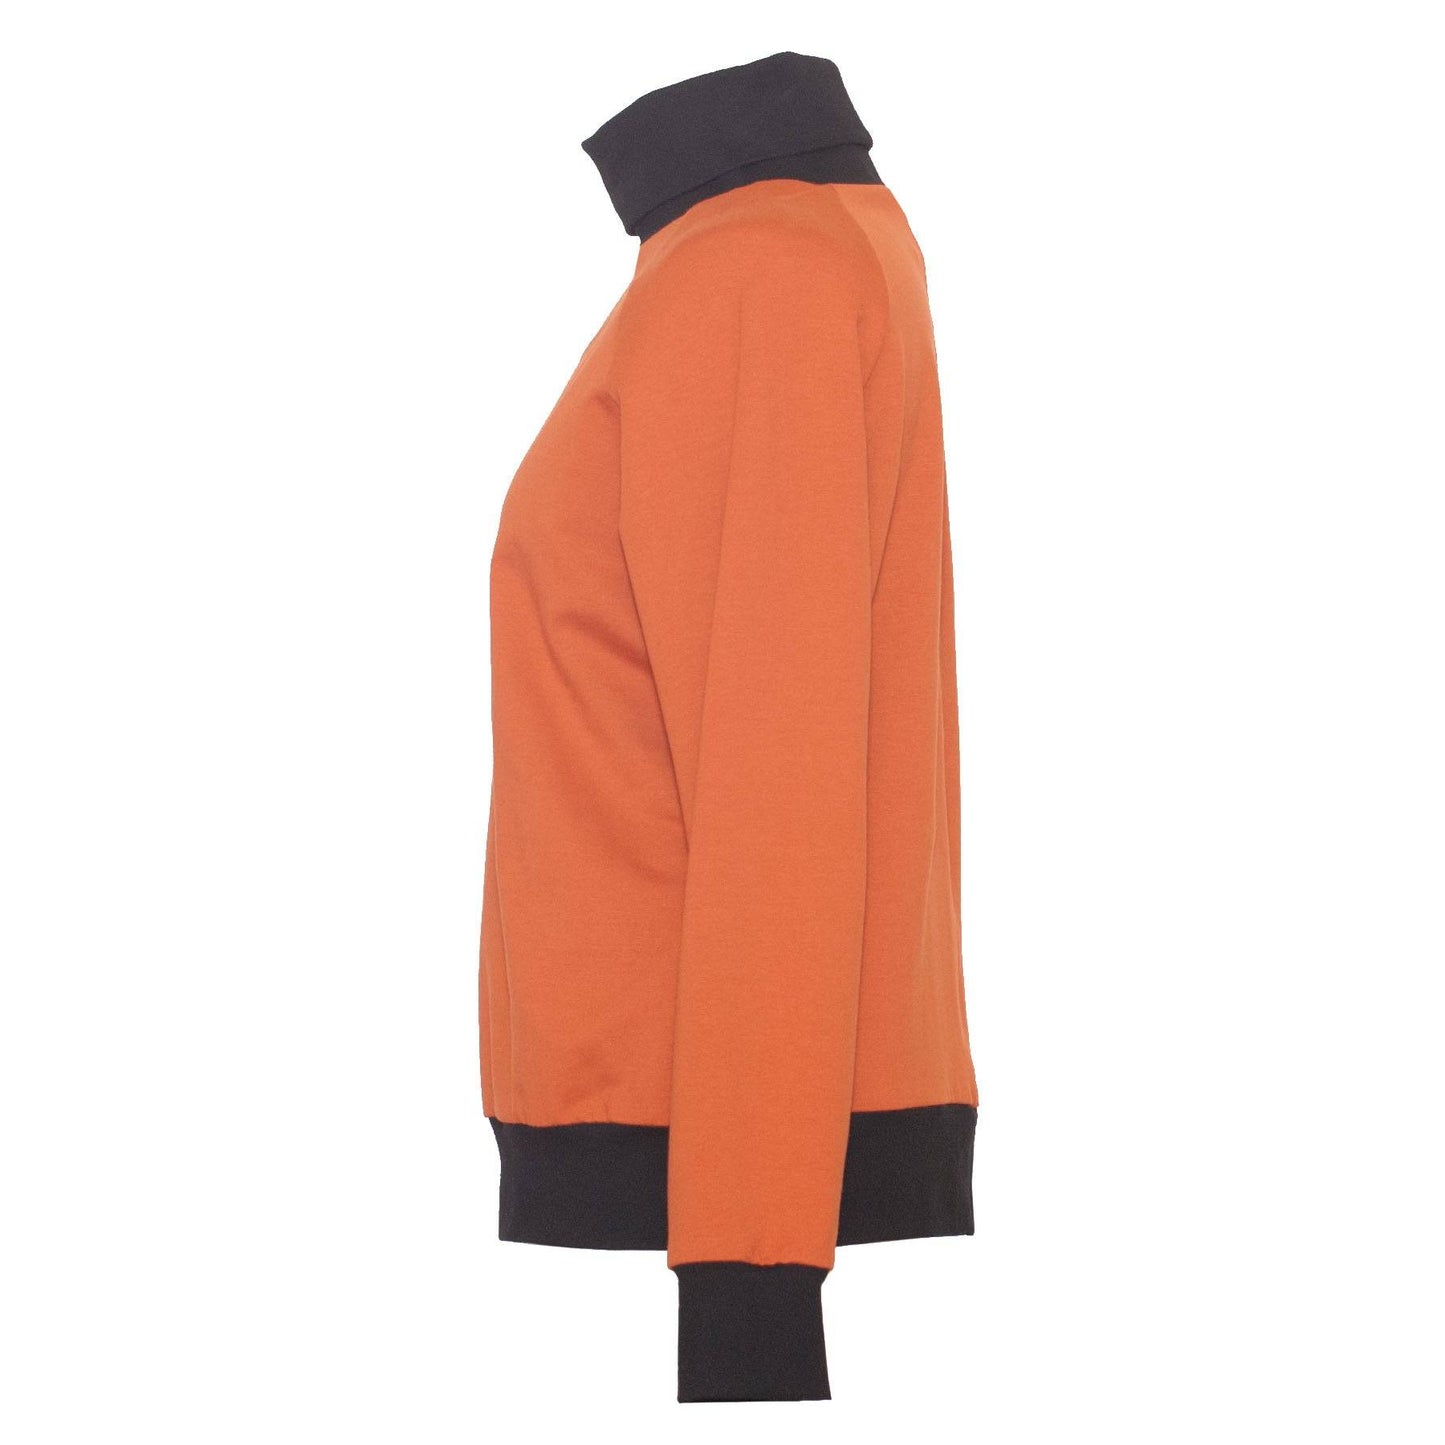 Rollkragensweater Try aus Bio-Baumwolle - orange - KOLO Berlin